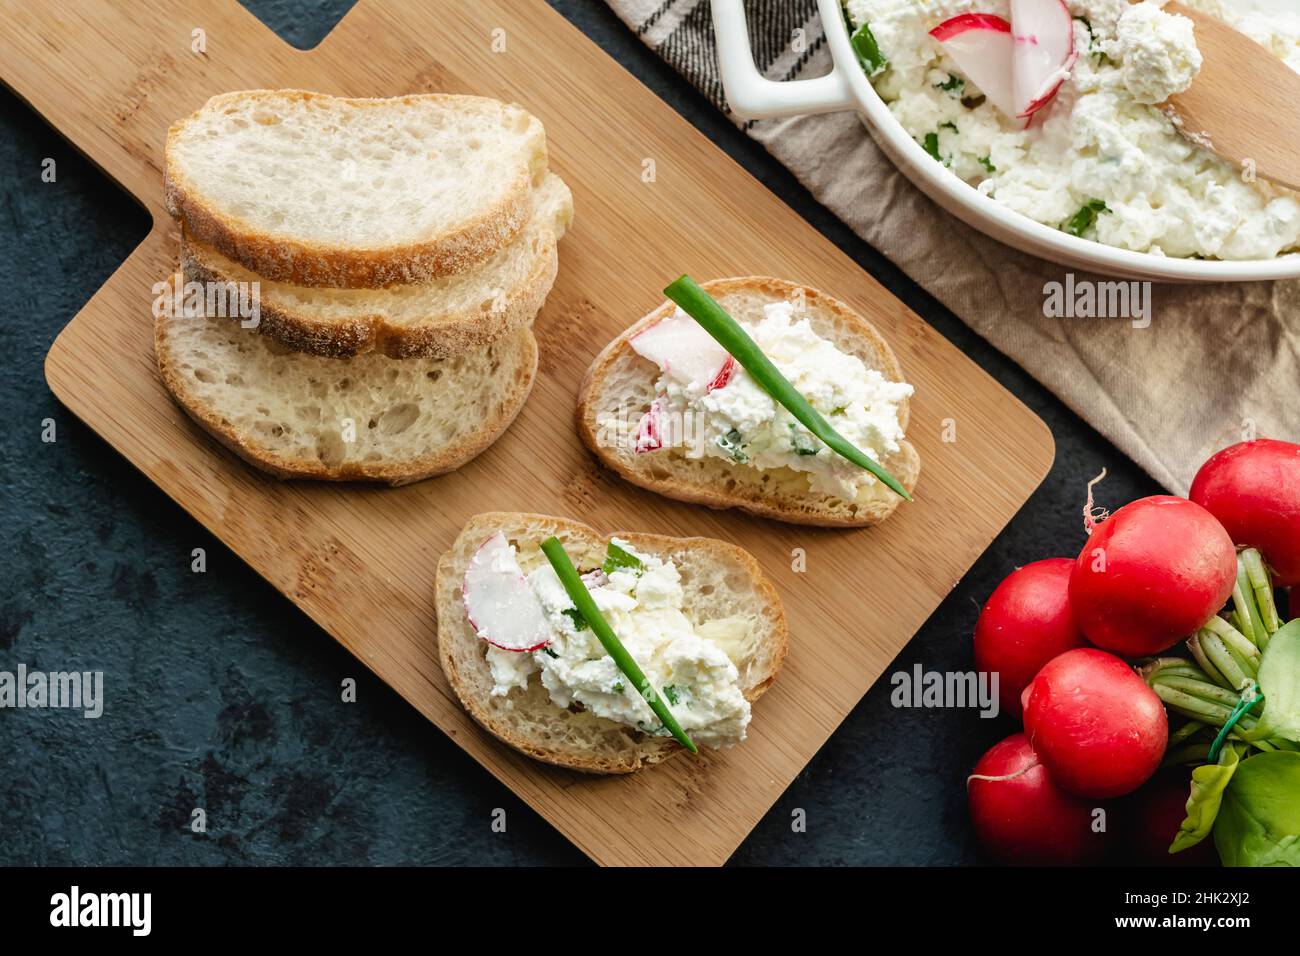 Sandwichs au fromage cottage pour un petit déjeuner sain Banque D'Images